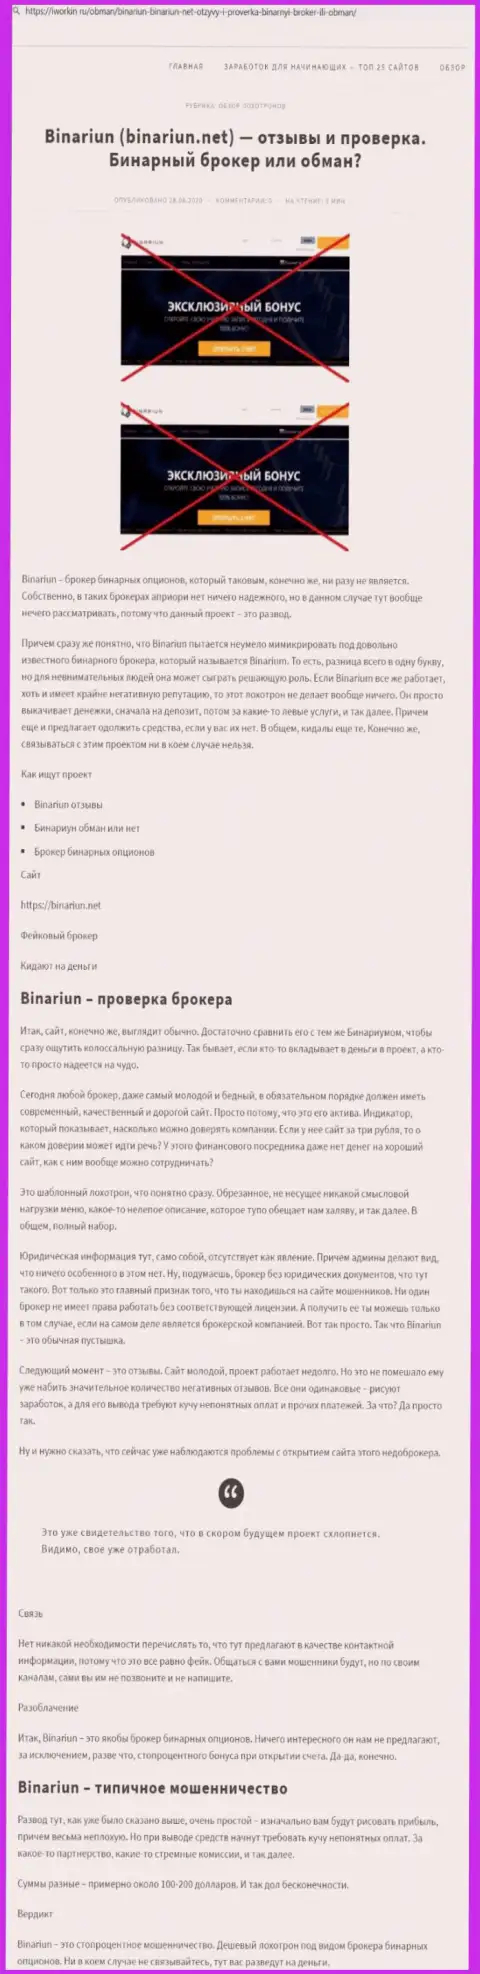 Binariun Net - это ОБМАНЩИКИ !!! Принципы деятельности КИДАЛОВА (обзор)